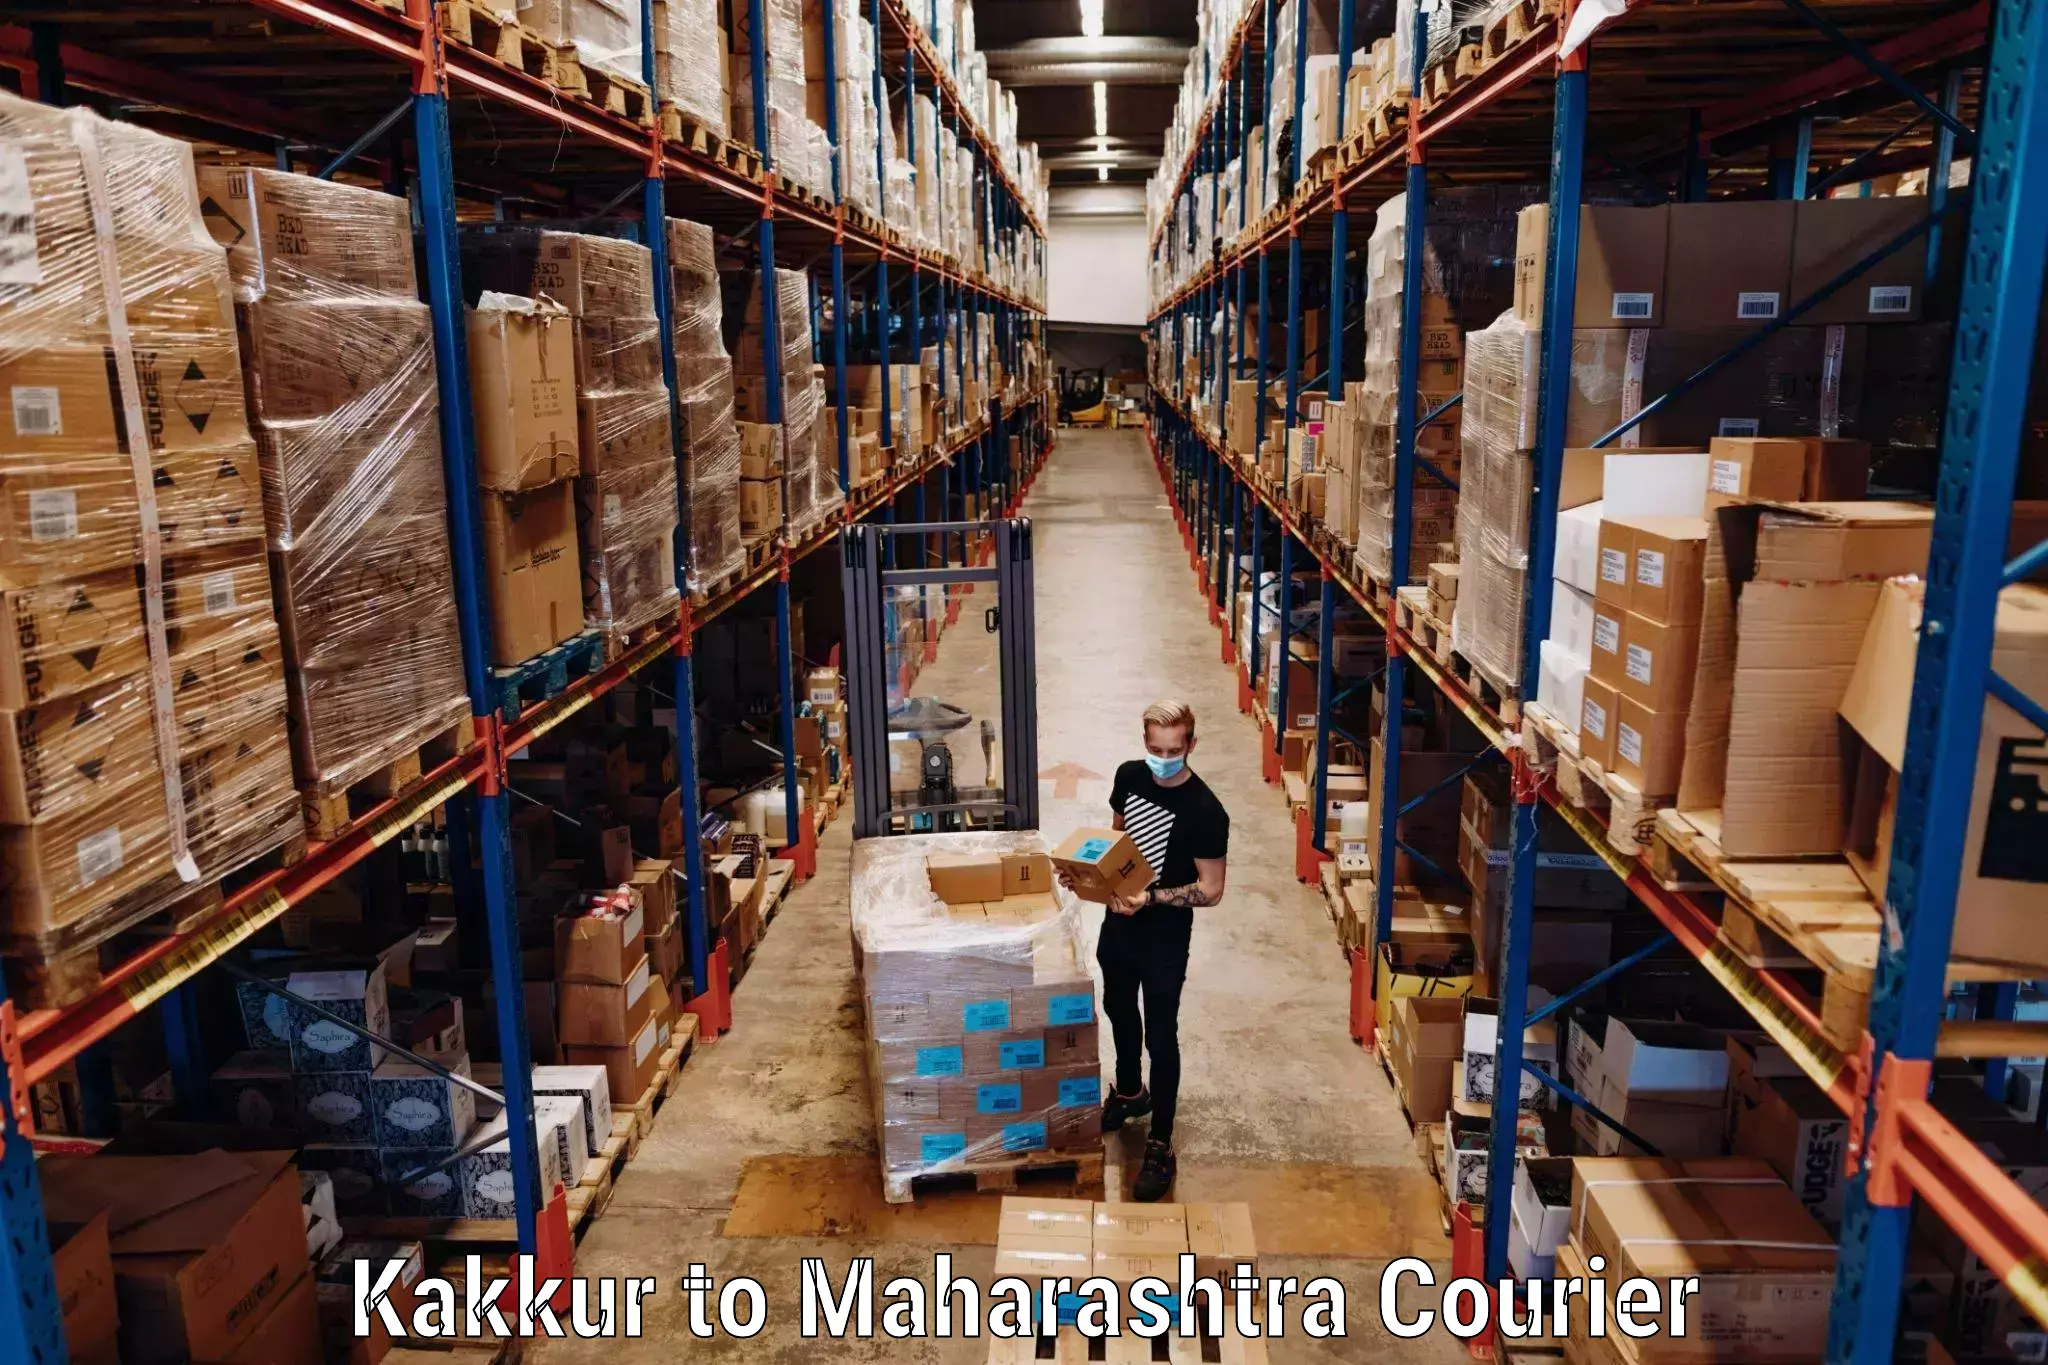 Luggage delivery network Kakkur to Ratnagiri